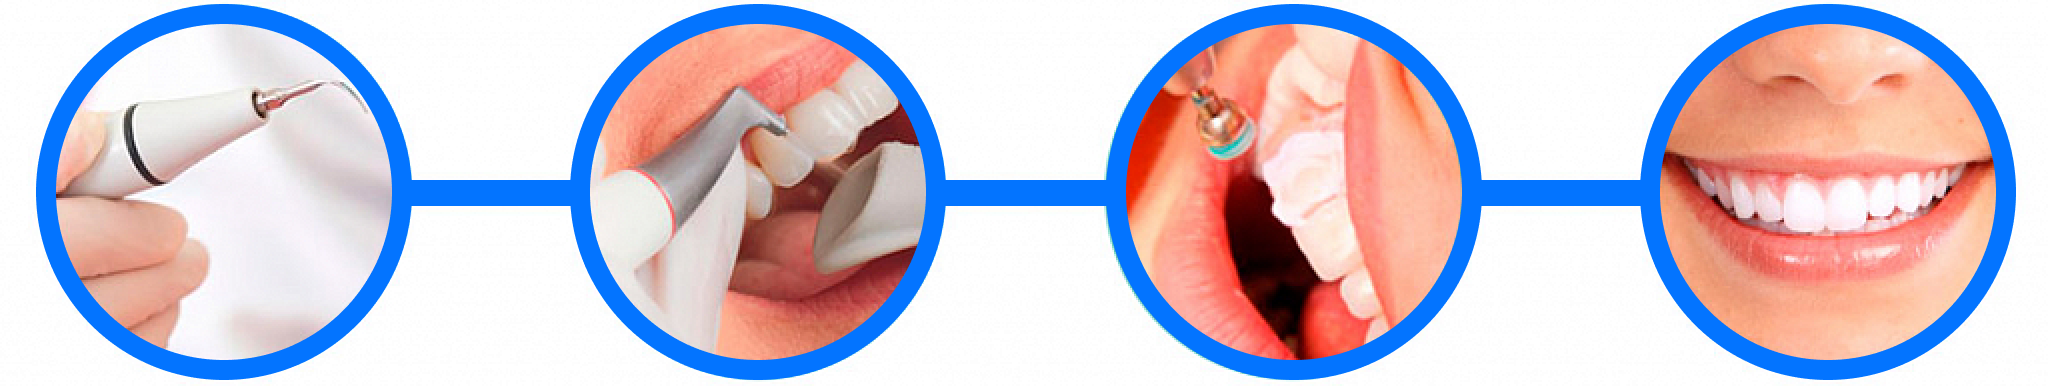 Этапы гигиены полости рта. Этапы профессиональной гигиены полости рта. Профессиональная чистка зубов этапы проведения. Проф гигиена ротовой полости этапы. Чистка зубов ультразвуком этапы.